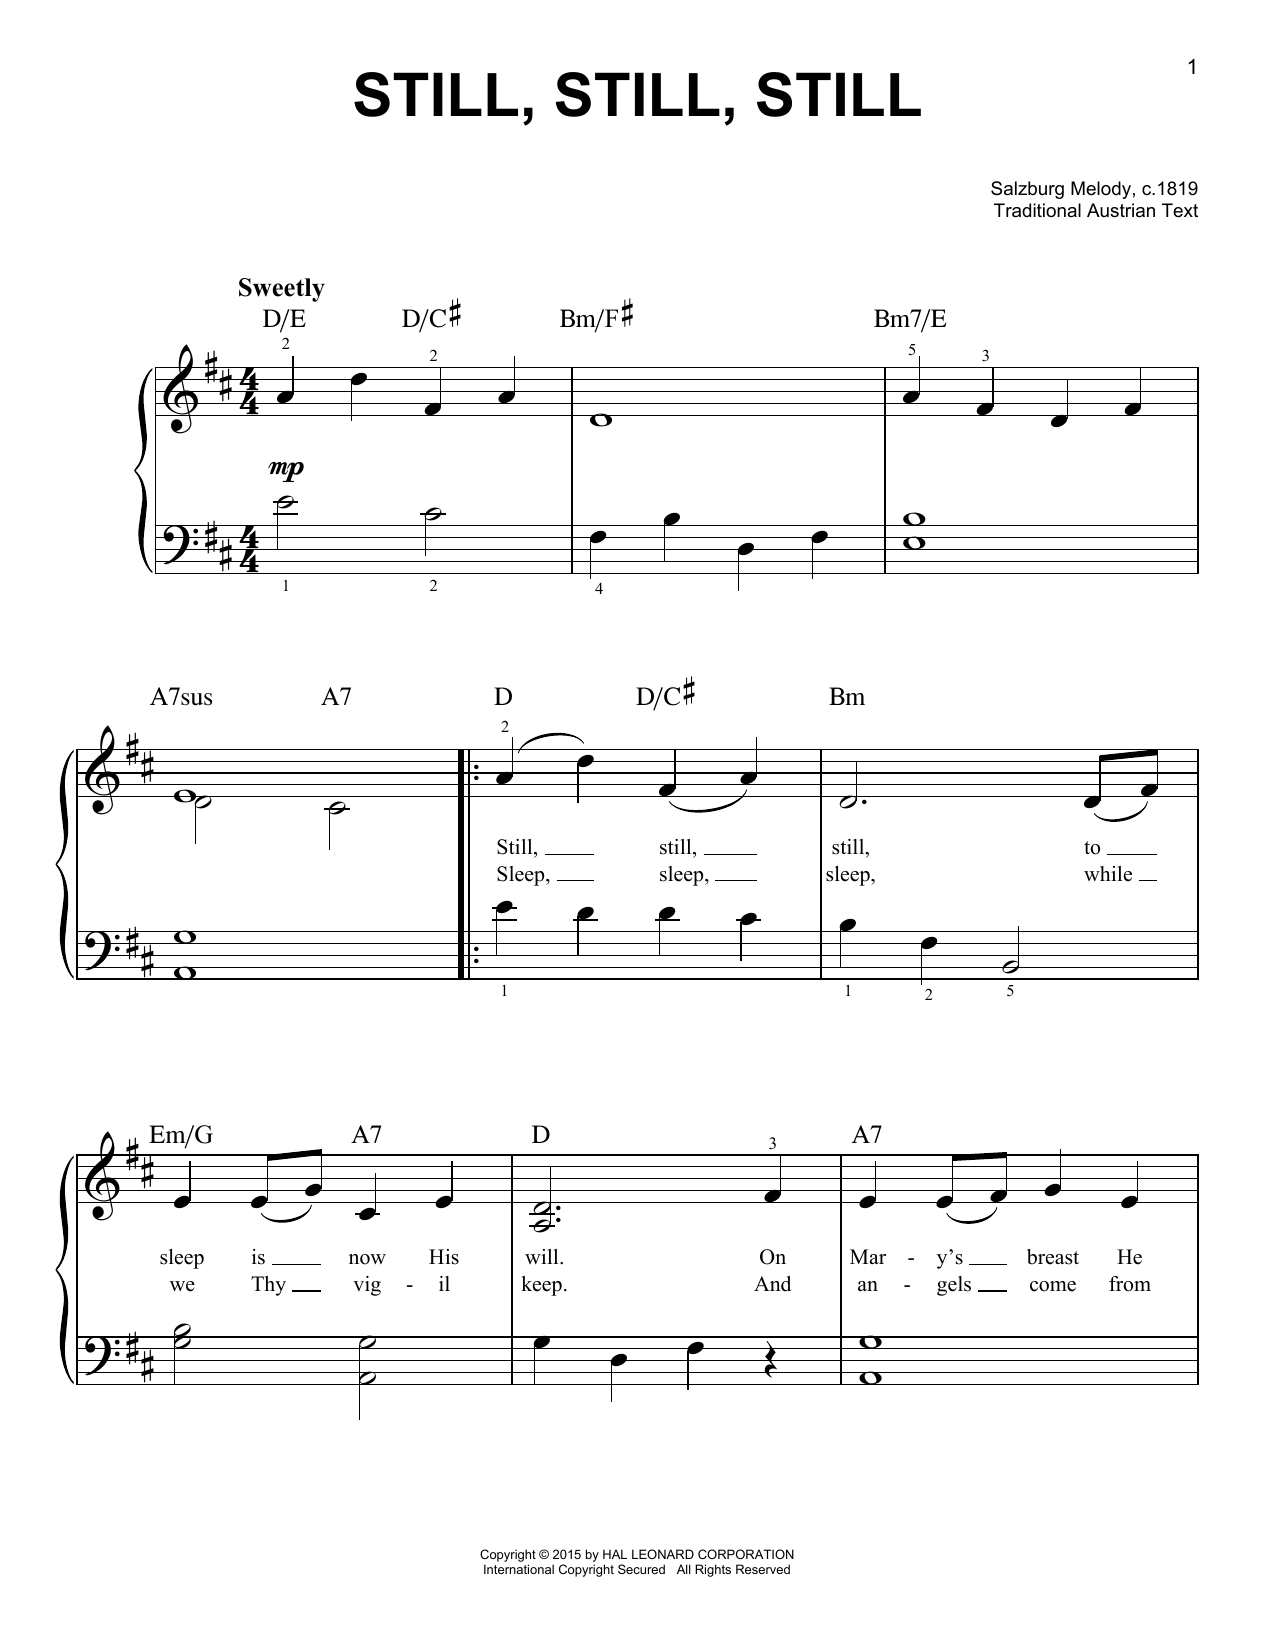 Salzburg Melody, c.1819 Still, Still, Still Sheet Music Notes & Chords for Flute Duet - Download or Print PDF